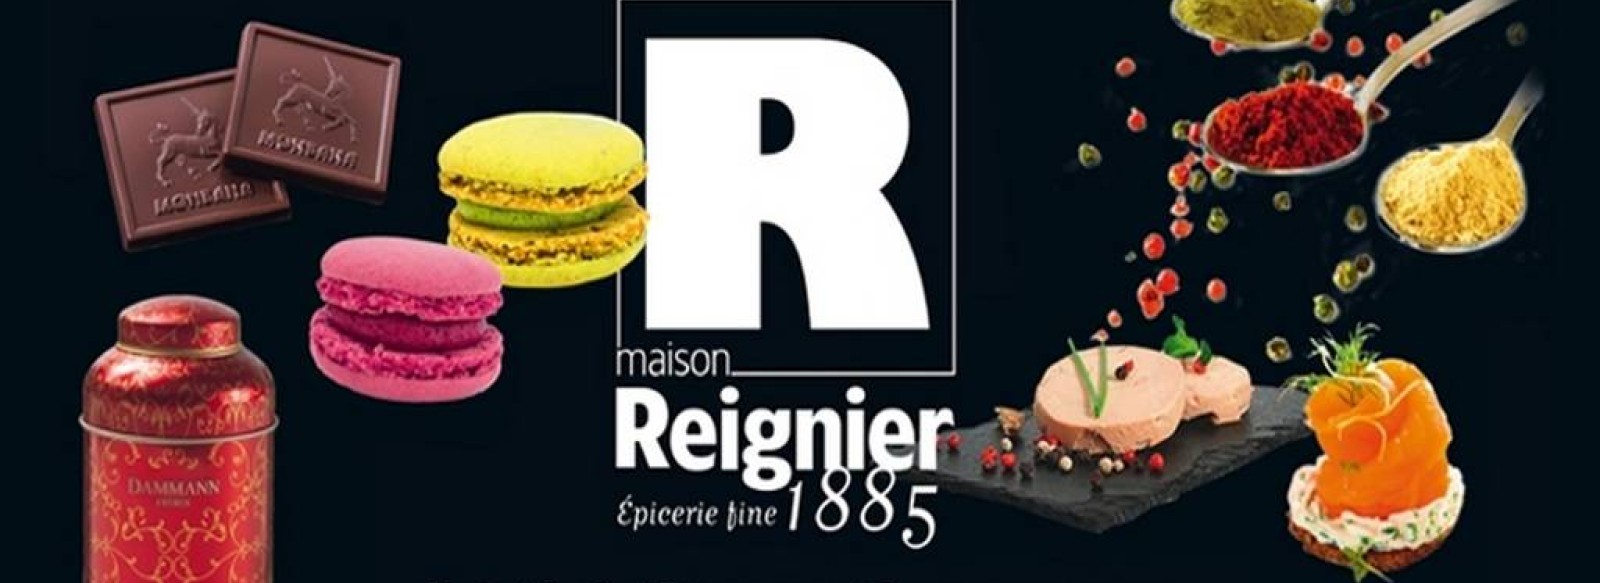 Epicerie fine - Maison Reignier